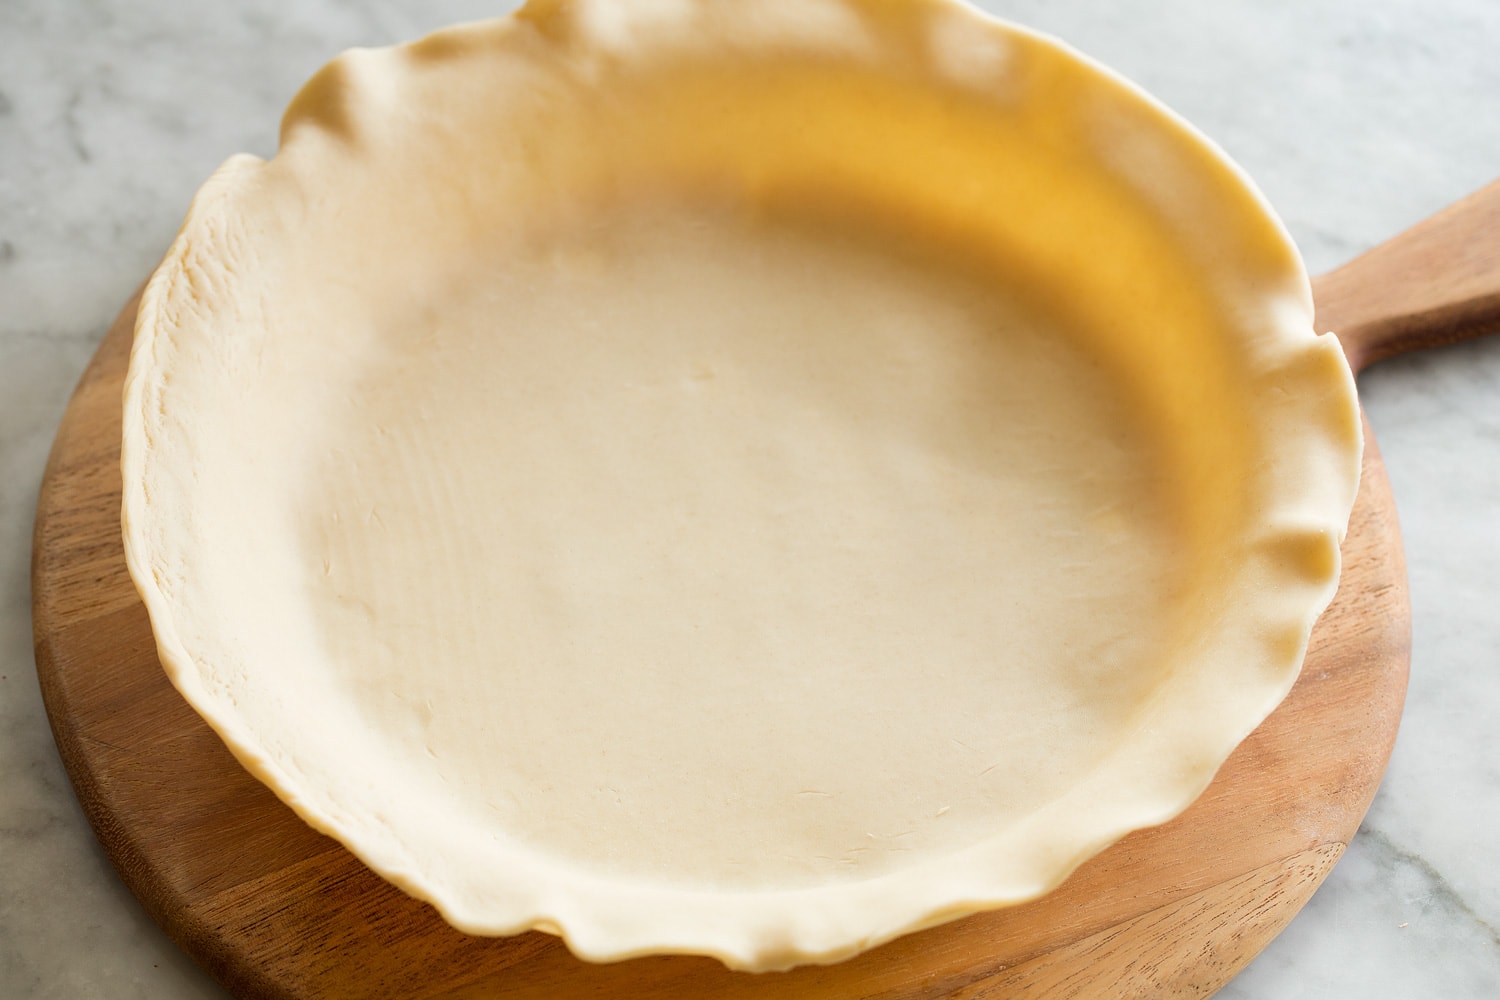 Laying crust in pie dish.